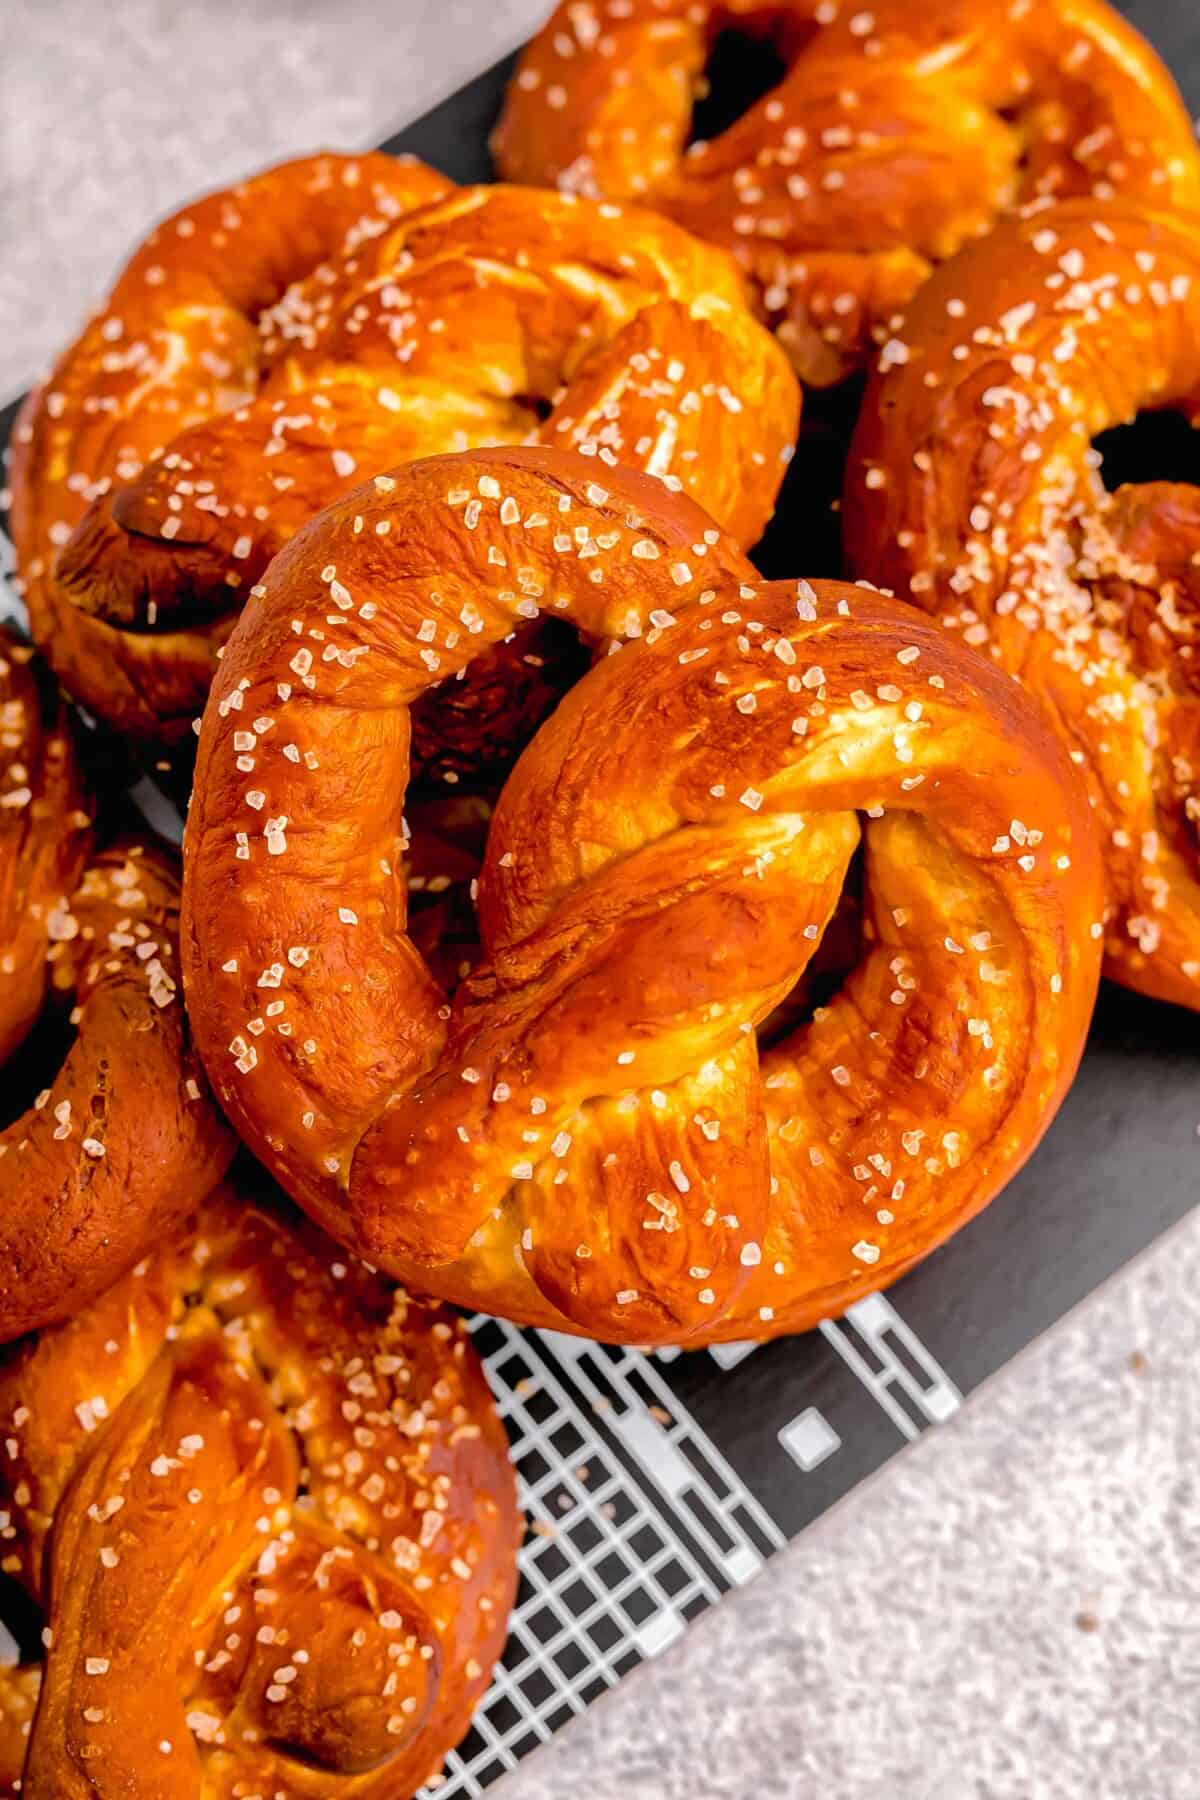 fresh baked browned homemade soft pretzels with salt sprinkled on top